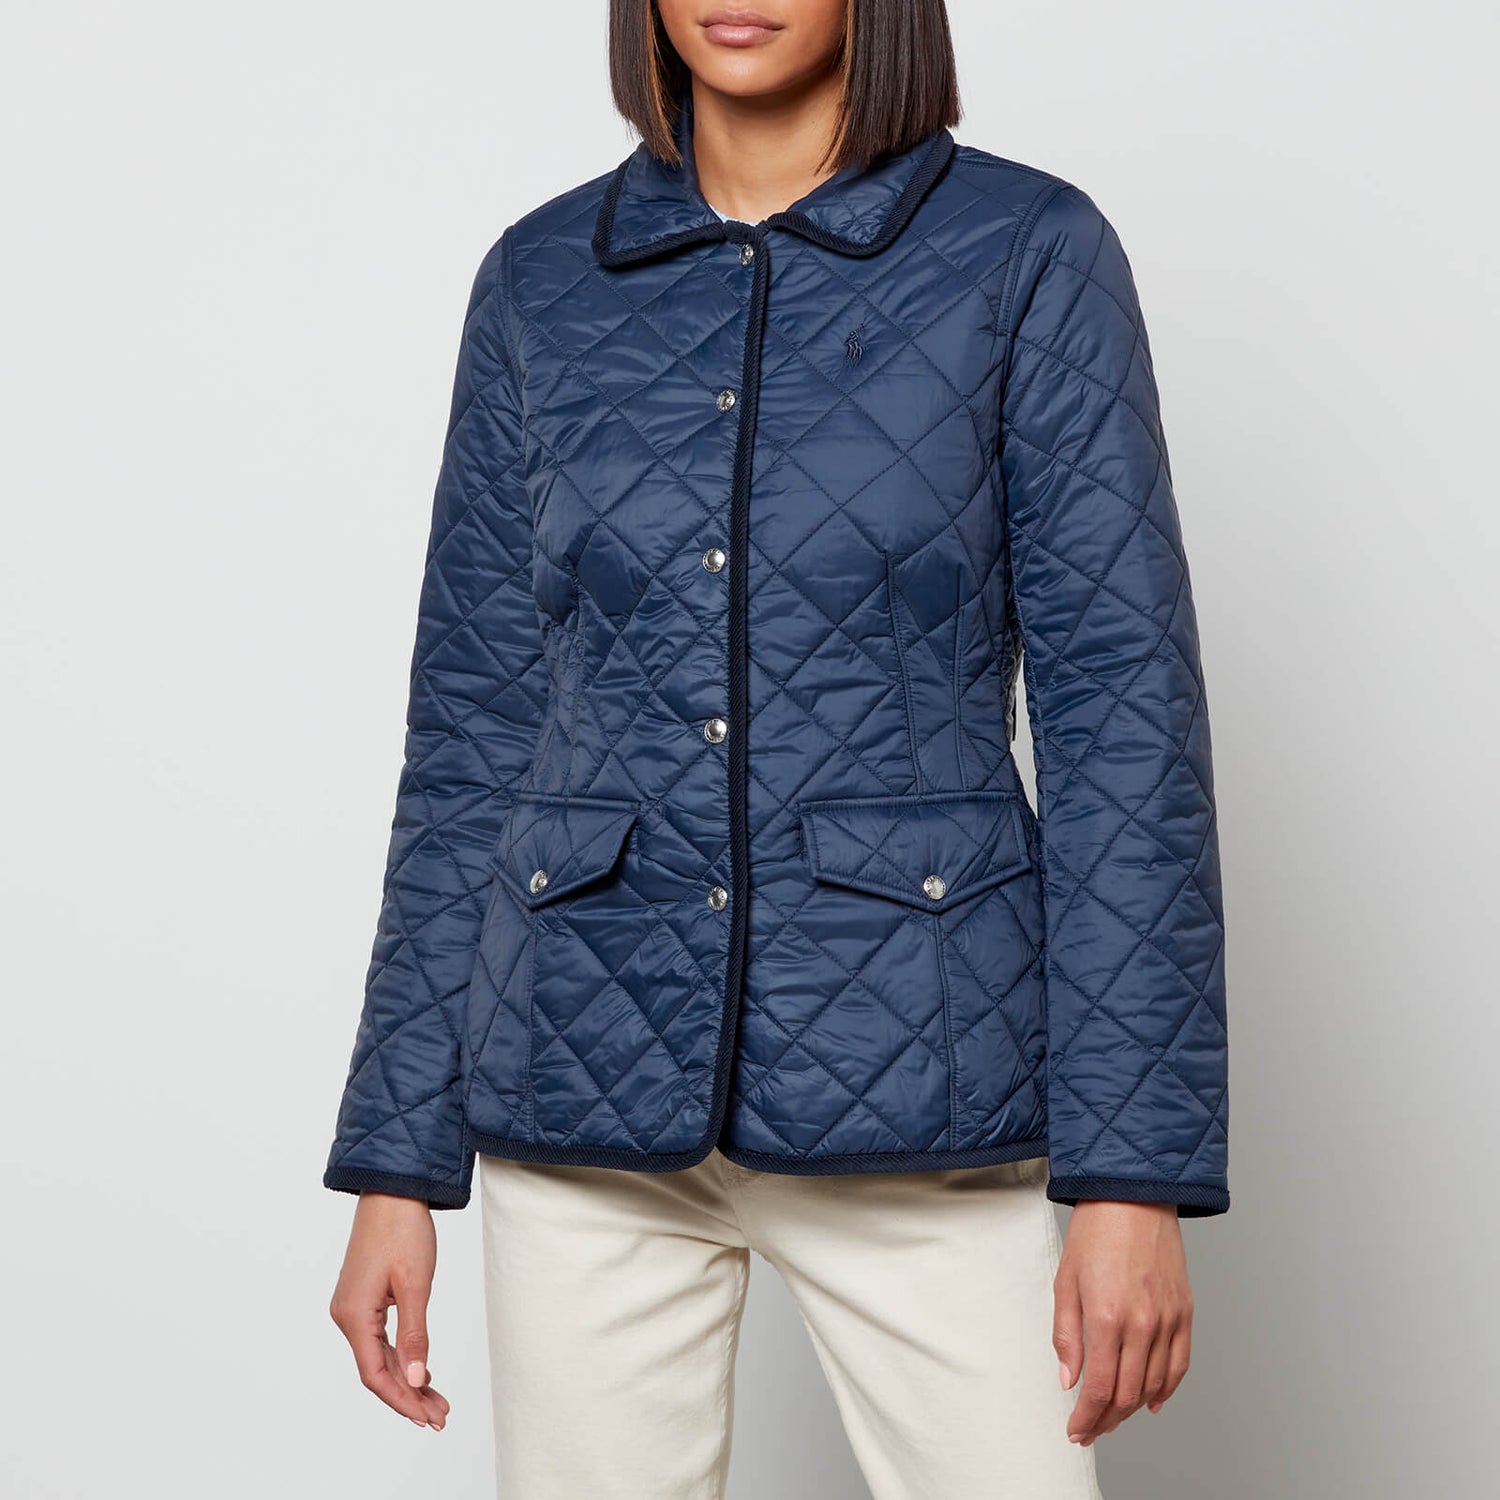 Polo Ralph Lauren Women's Harper Quilt Jacket - Aviator Navy - XS